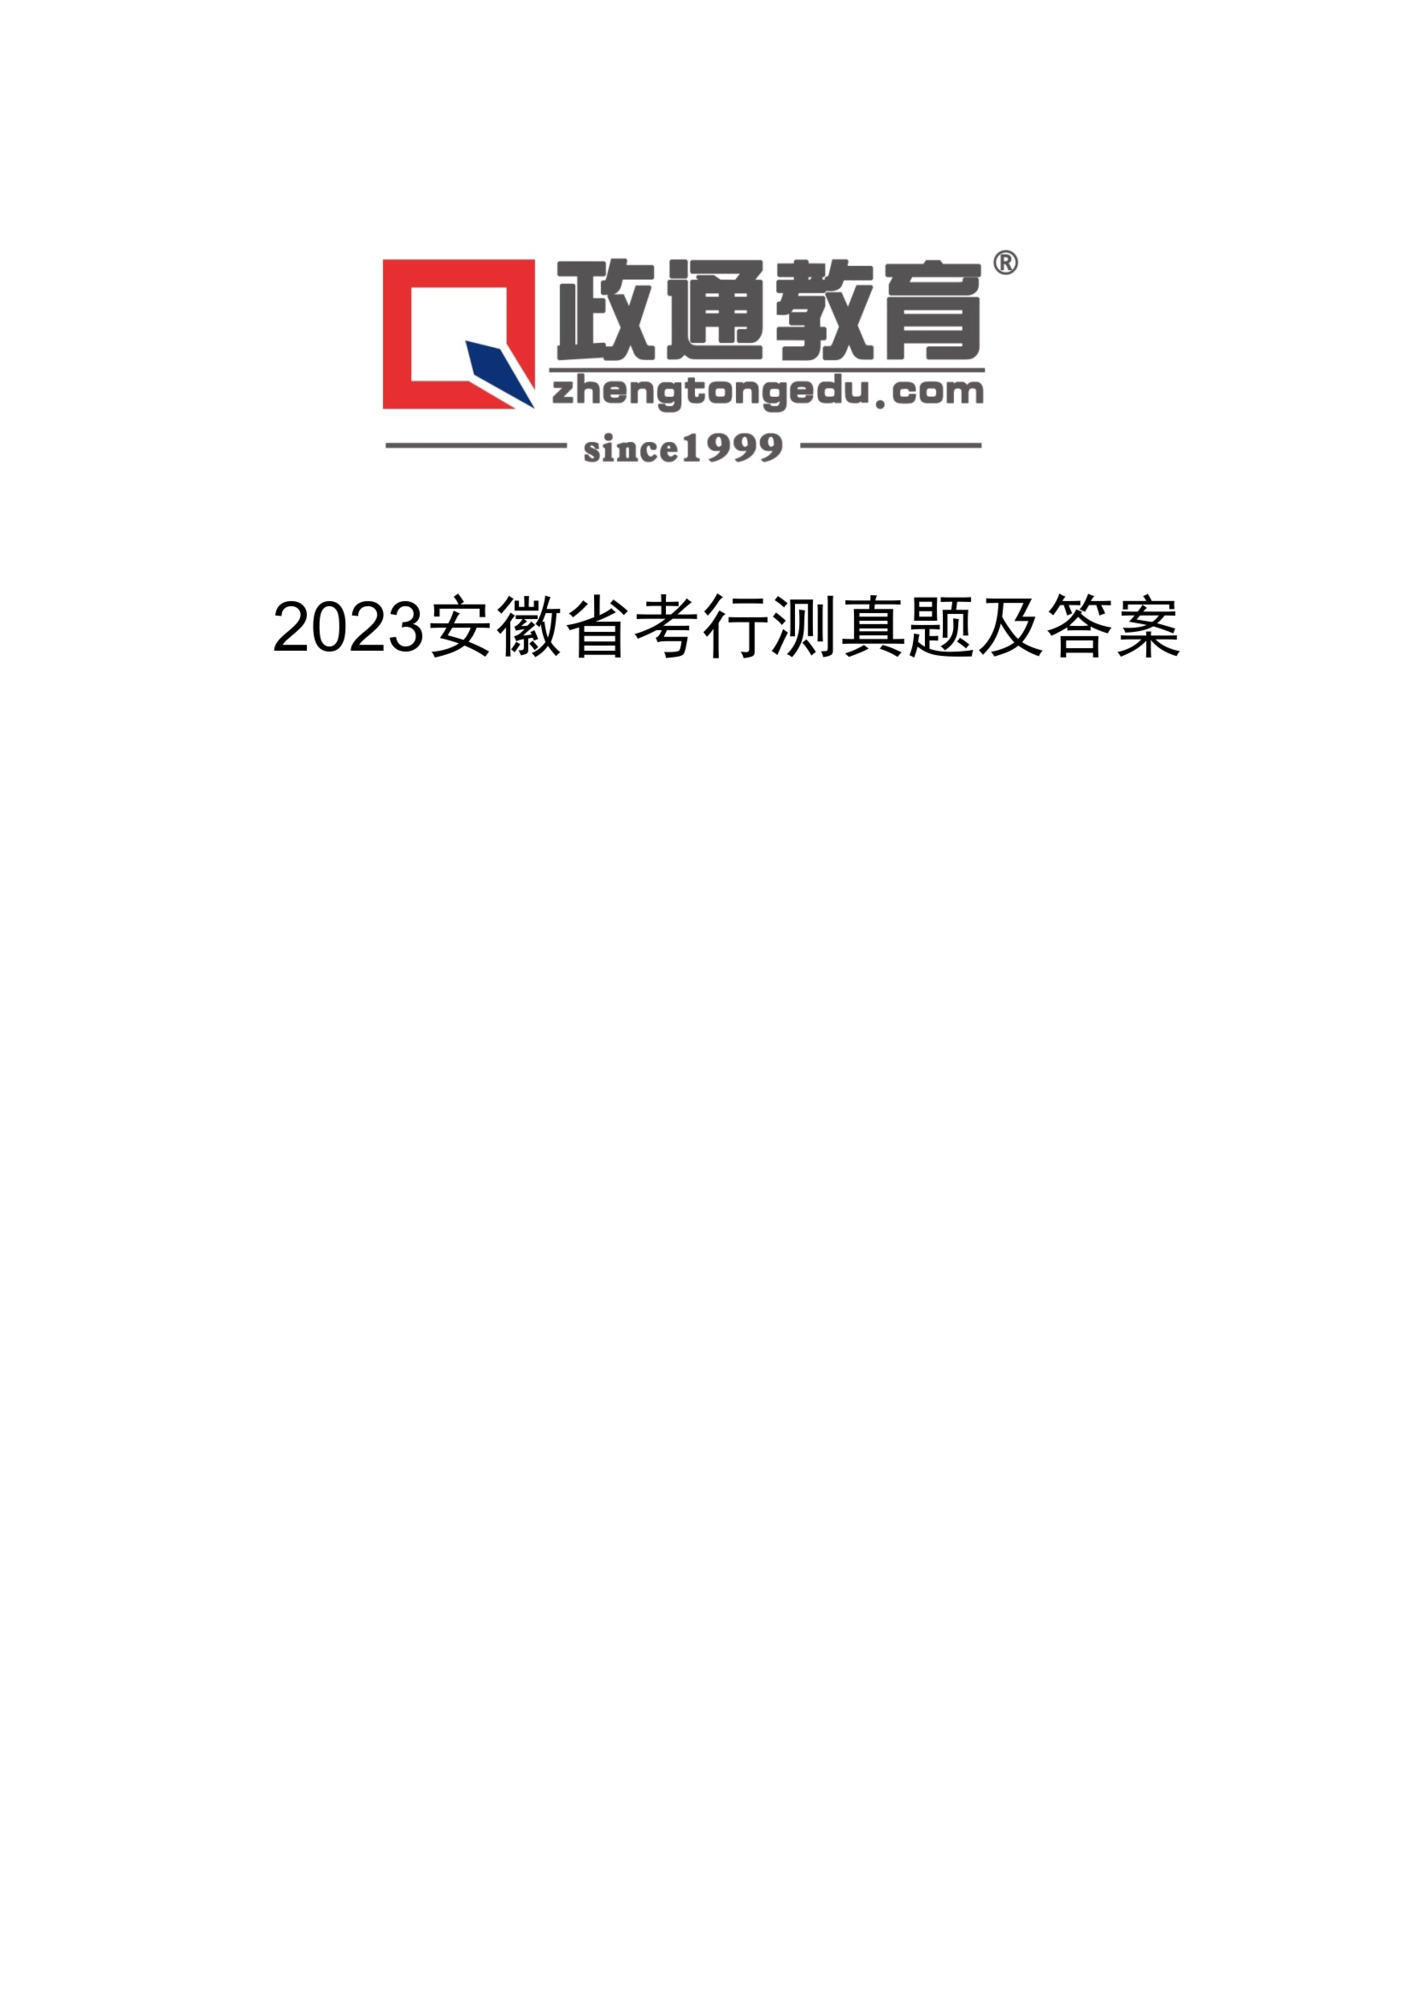 2023安徽省考行测真题及答案 (1).png